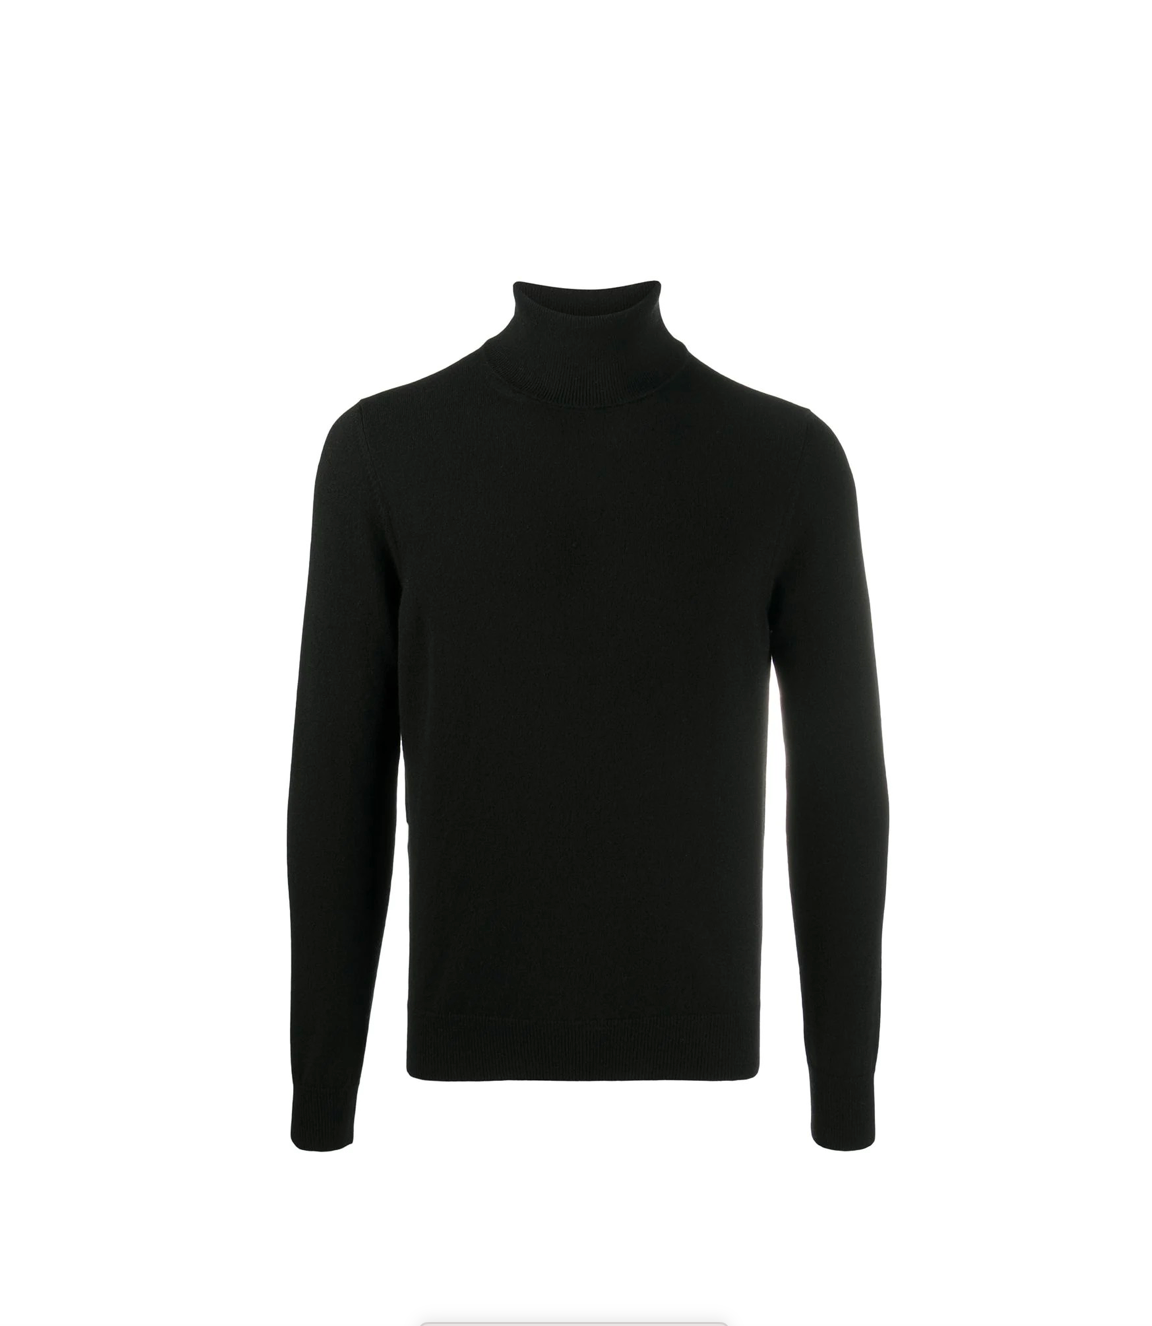 UOMO- Maglia a collo alto fino over in cashmere 100% black